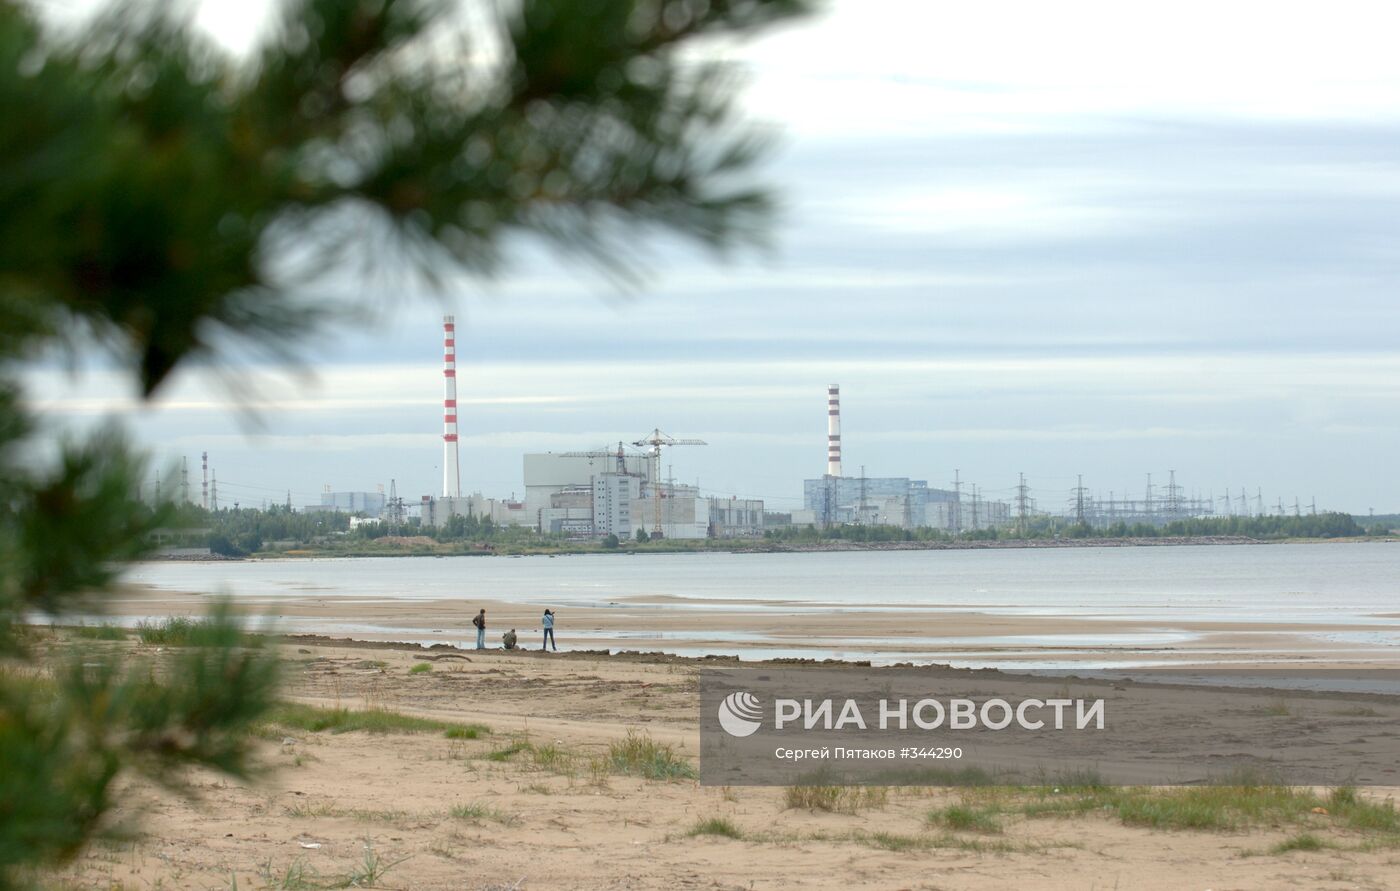 Ленинградская атомная электростанция (ЛАЭС)